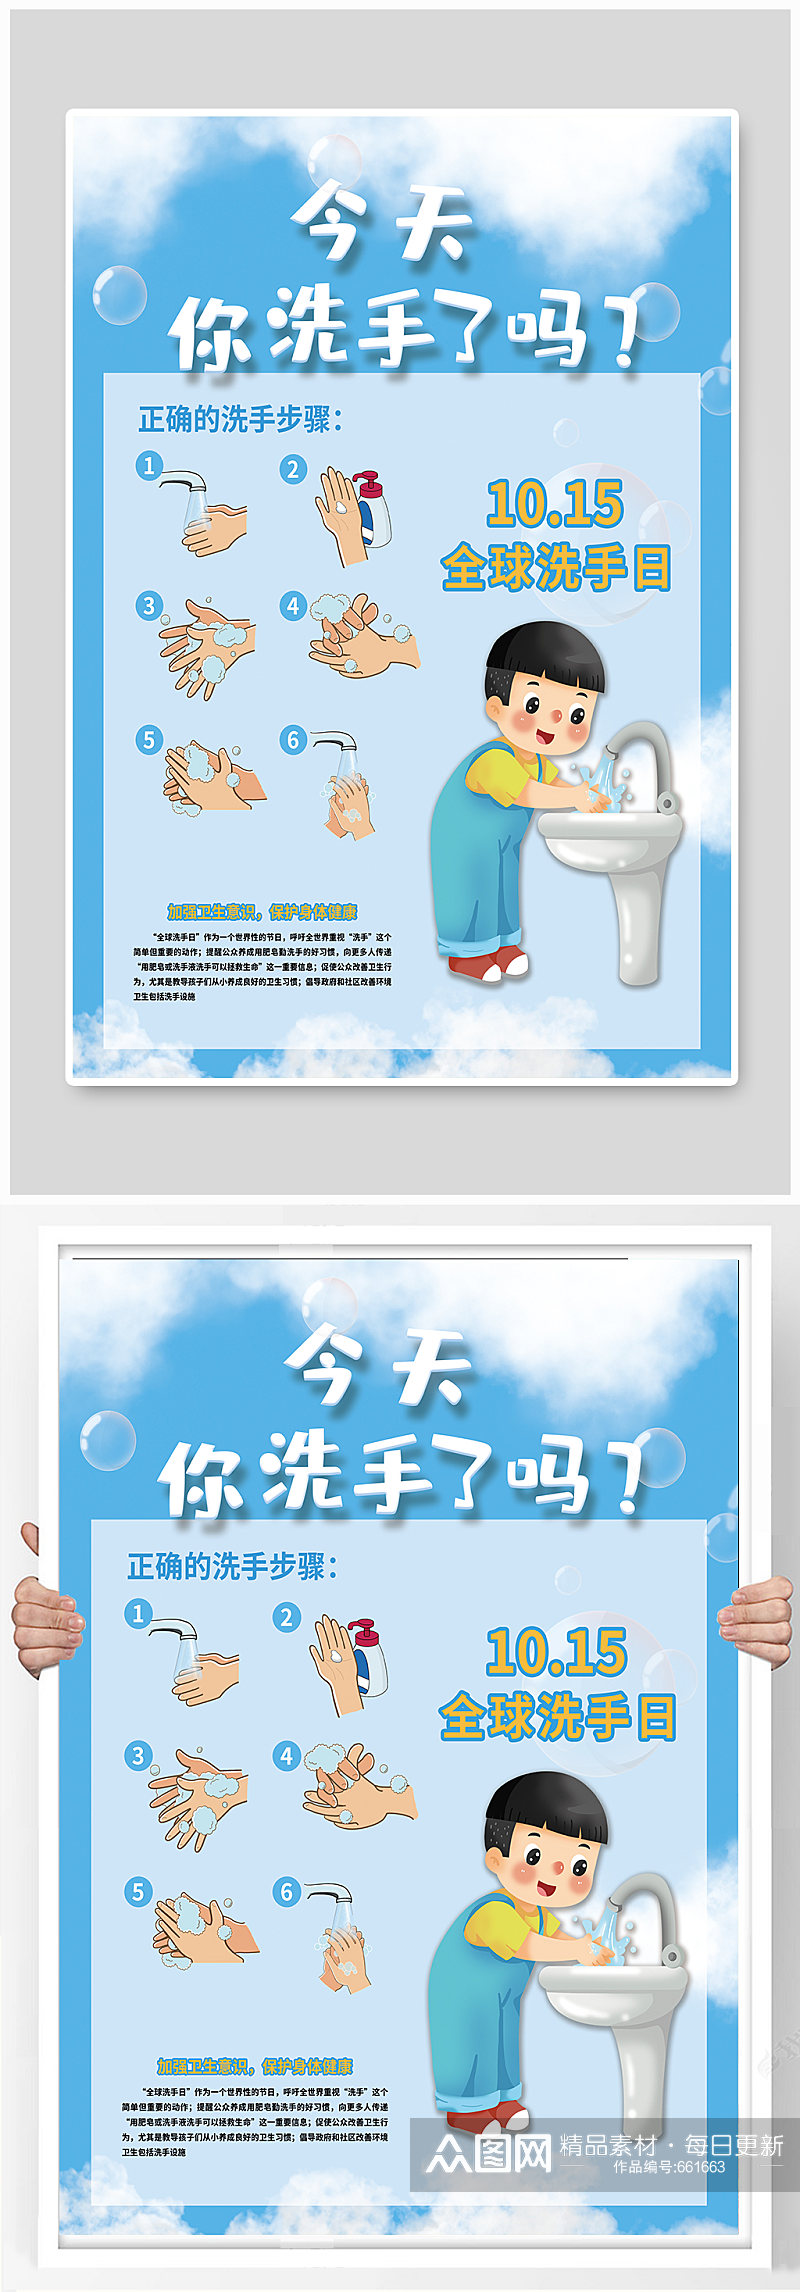 全球洗手日节日海报素材